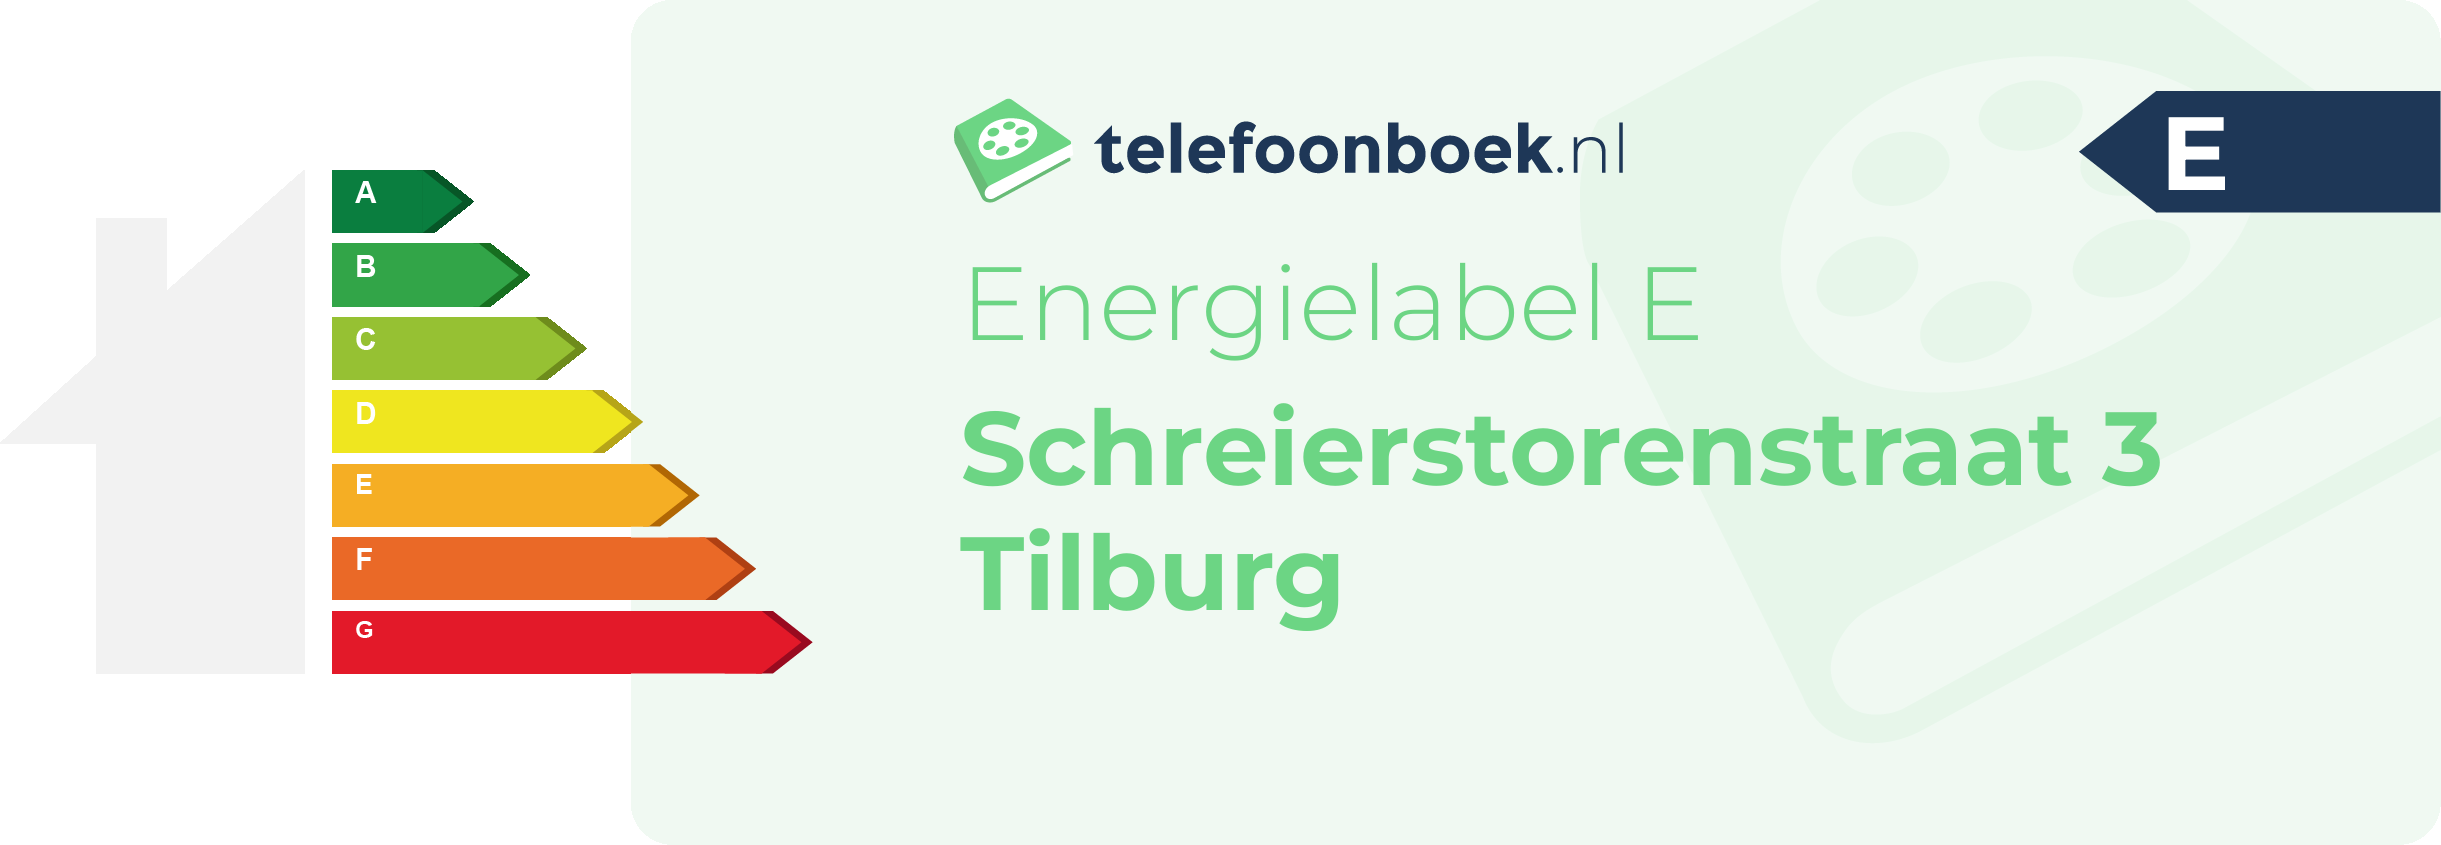 Energielabel Schreierstorenstraat 3 Tilburg